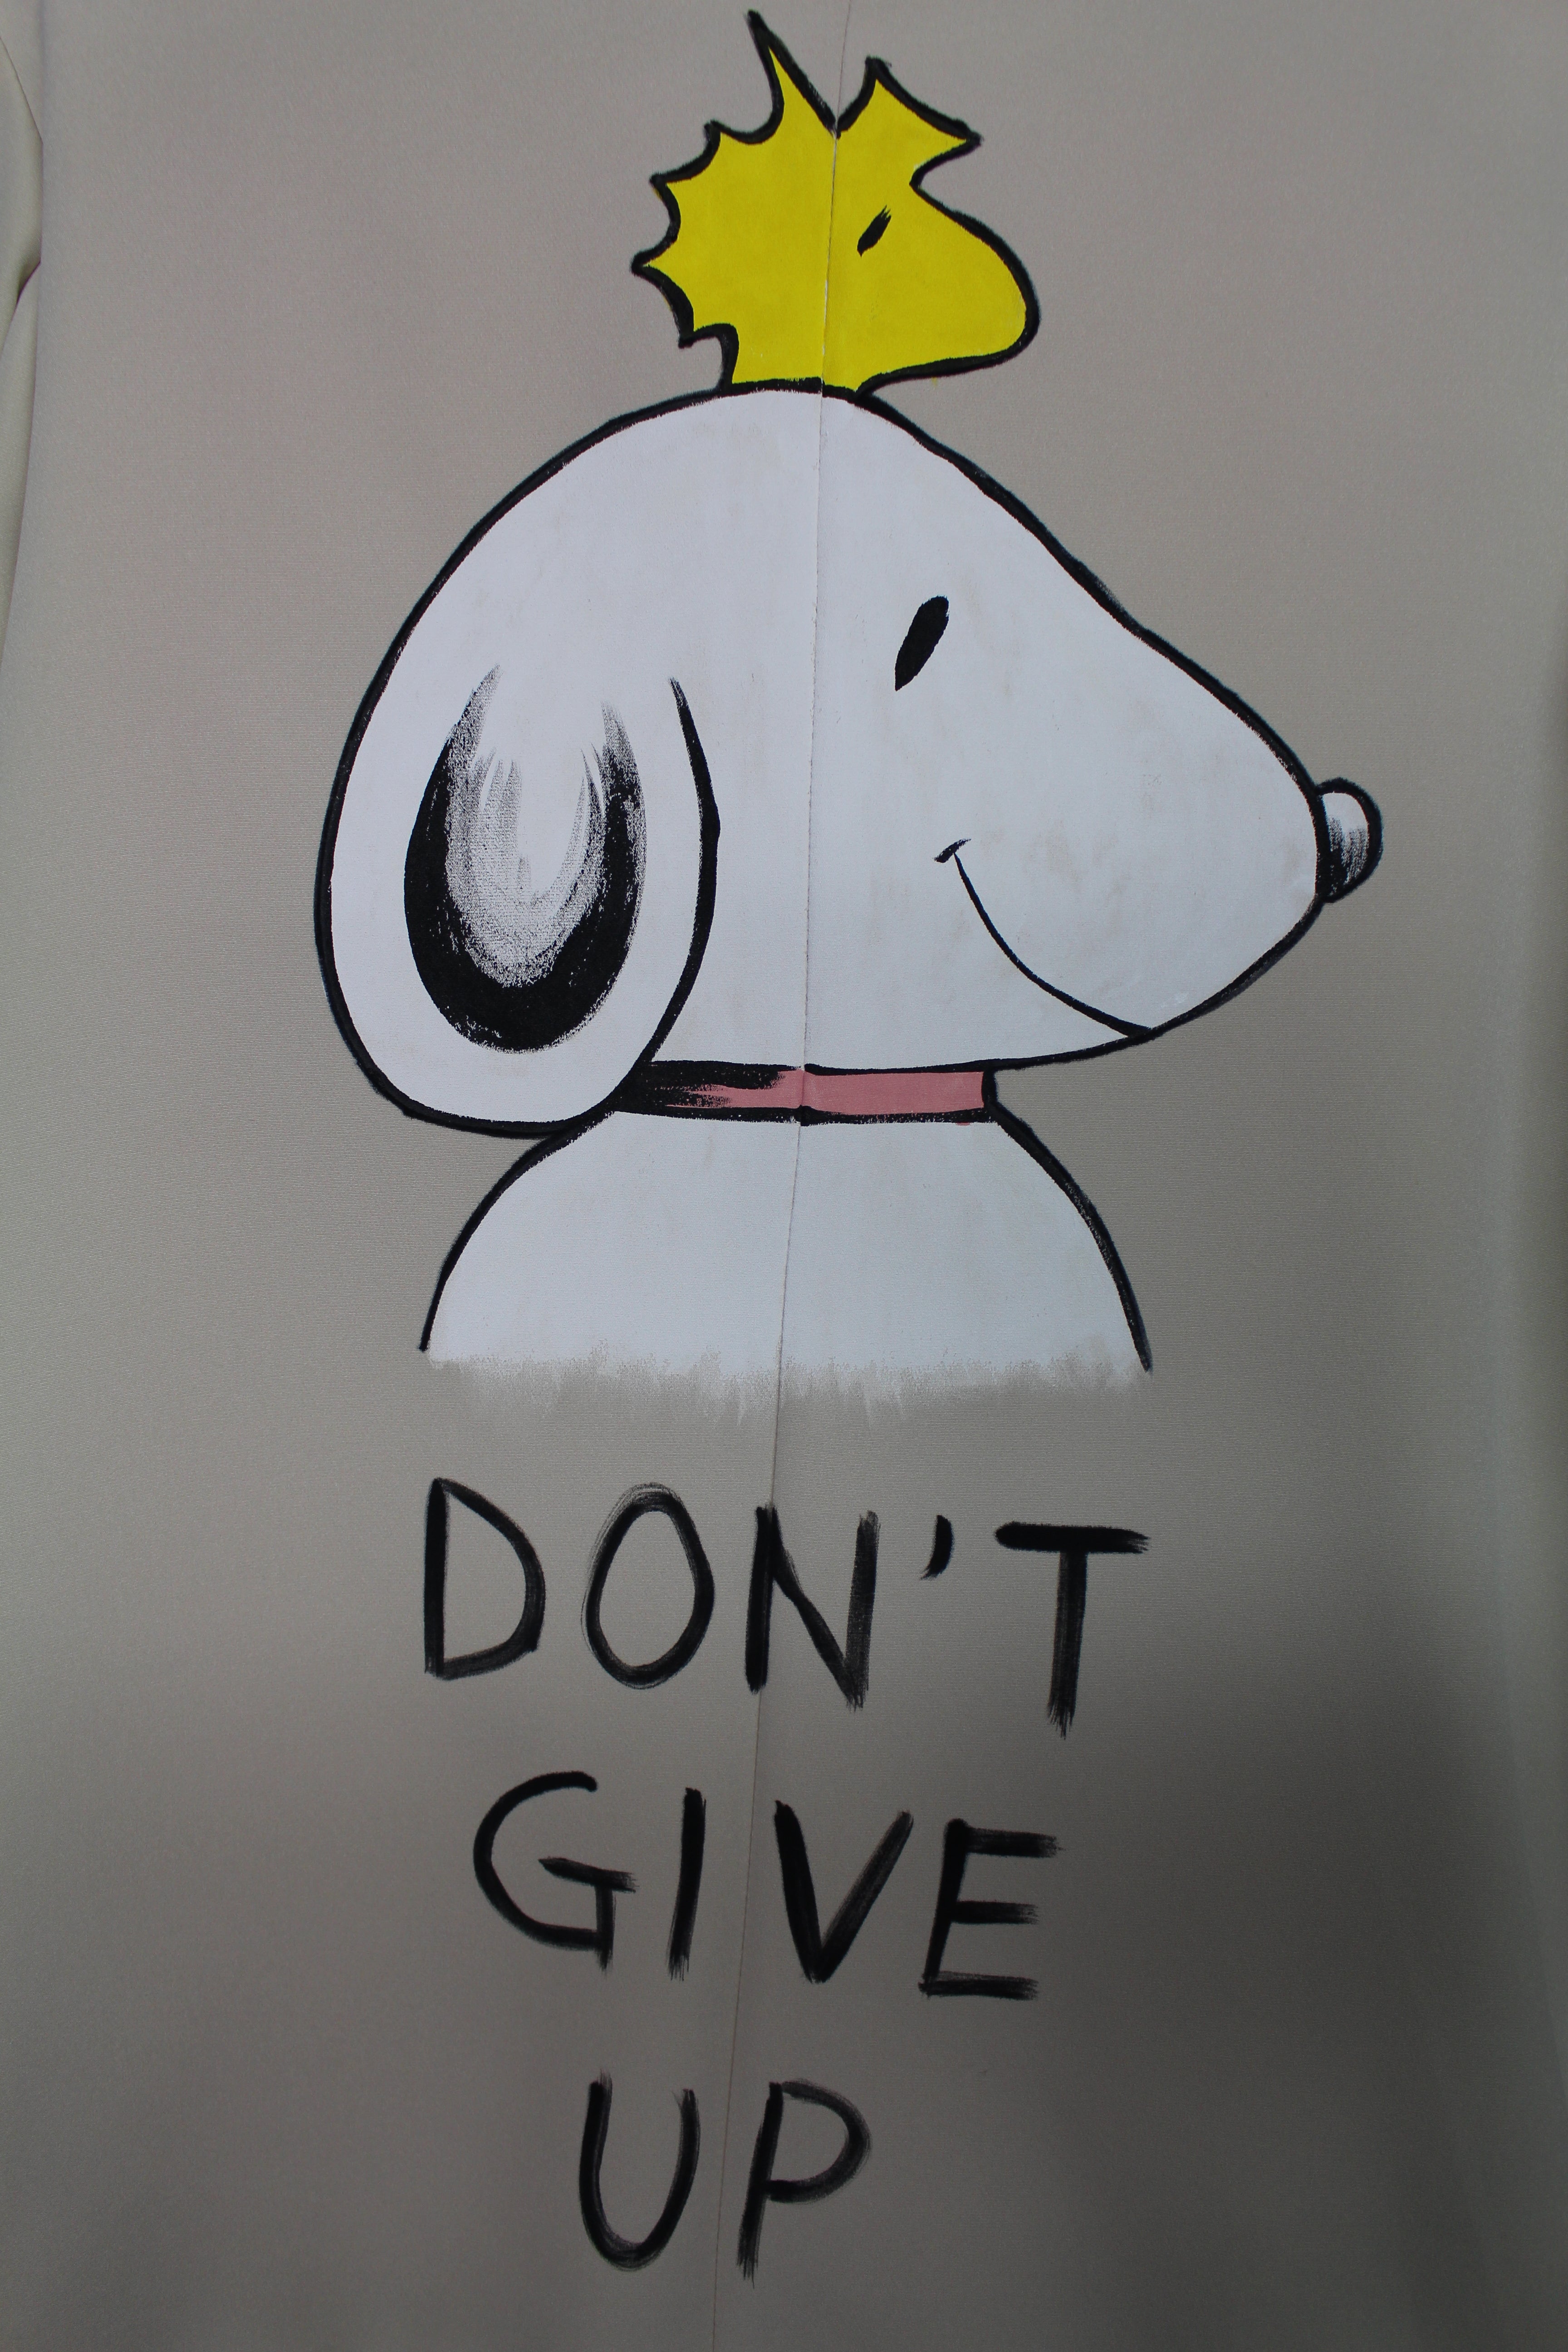 Giacca Elegante dipinta a mano "Don't Give Up"